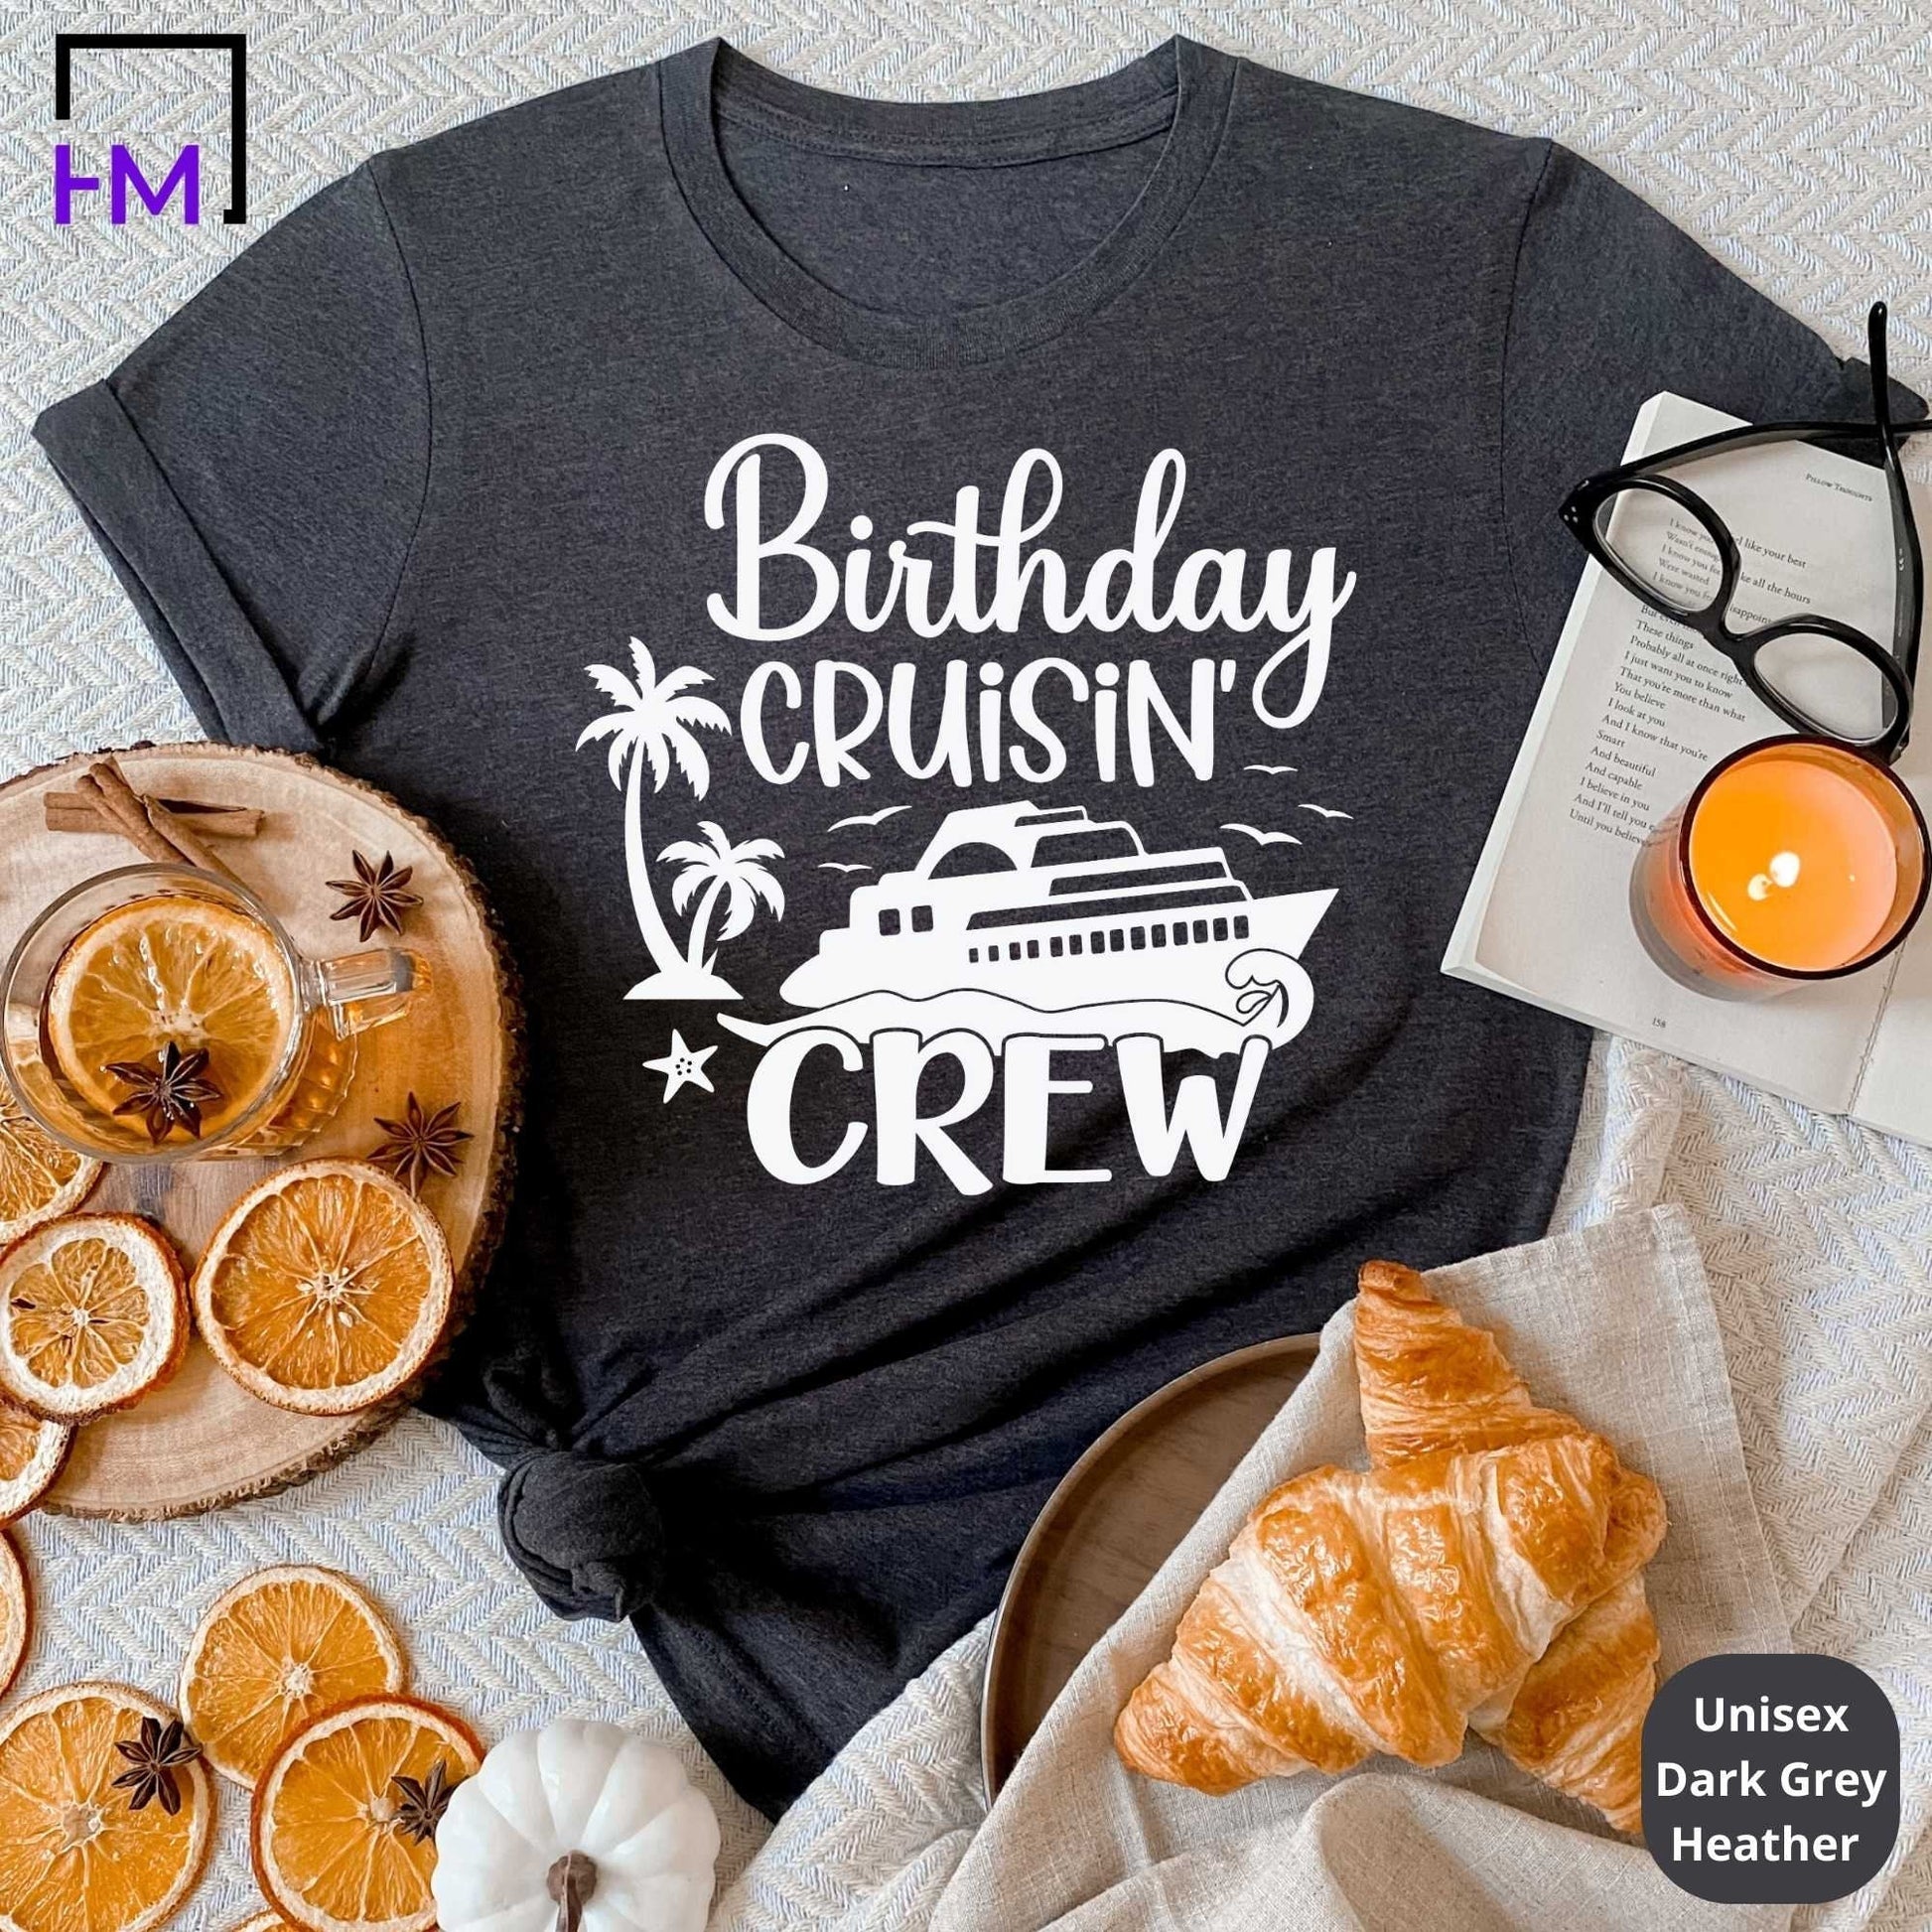 Birthday Cruisin Crew, Birthday Cruise Shirts HMDesignStudioUS